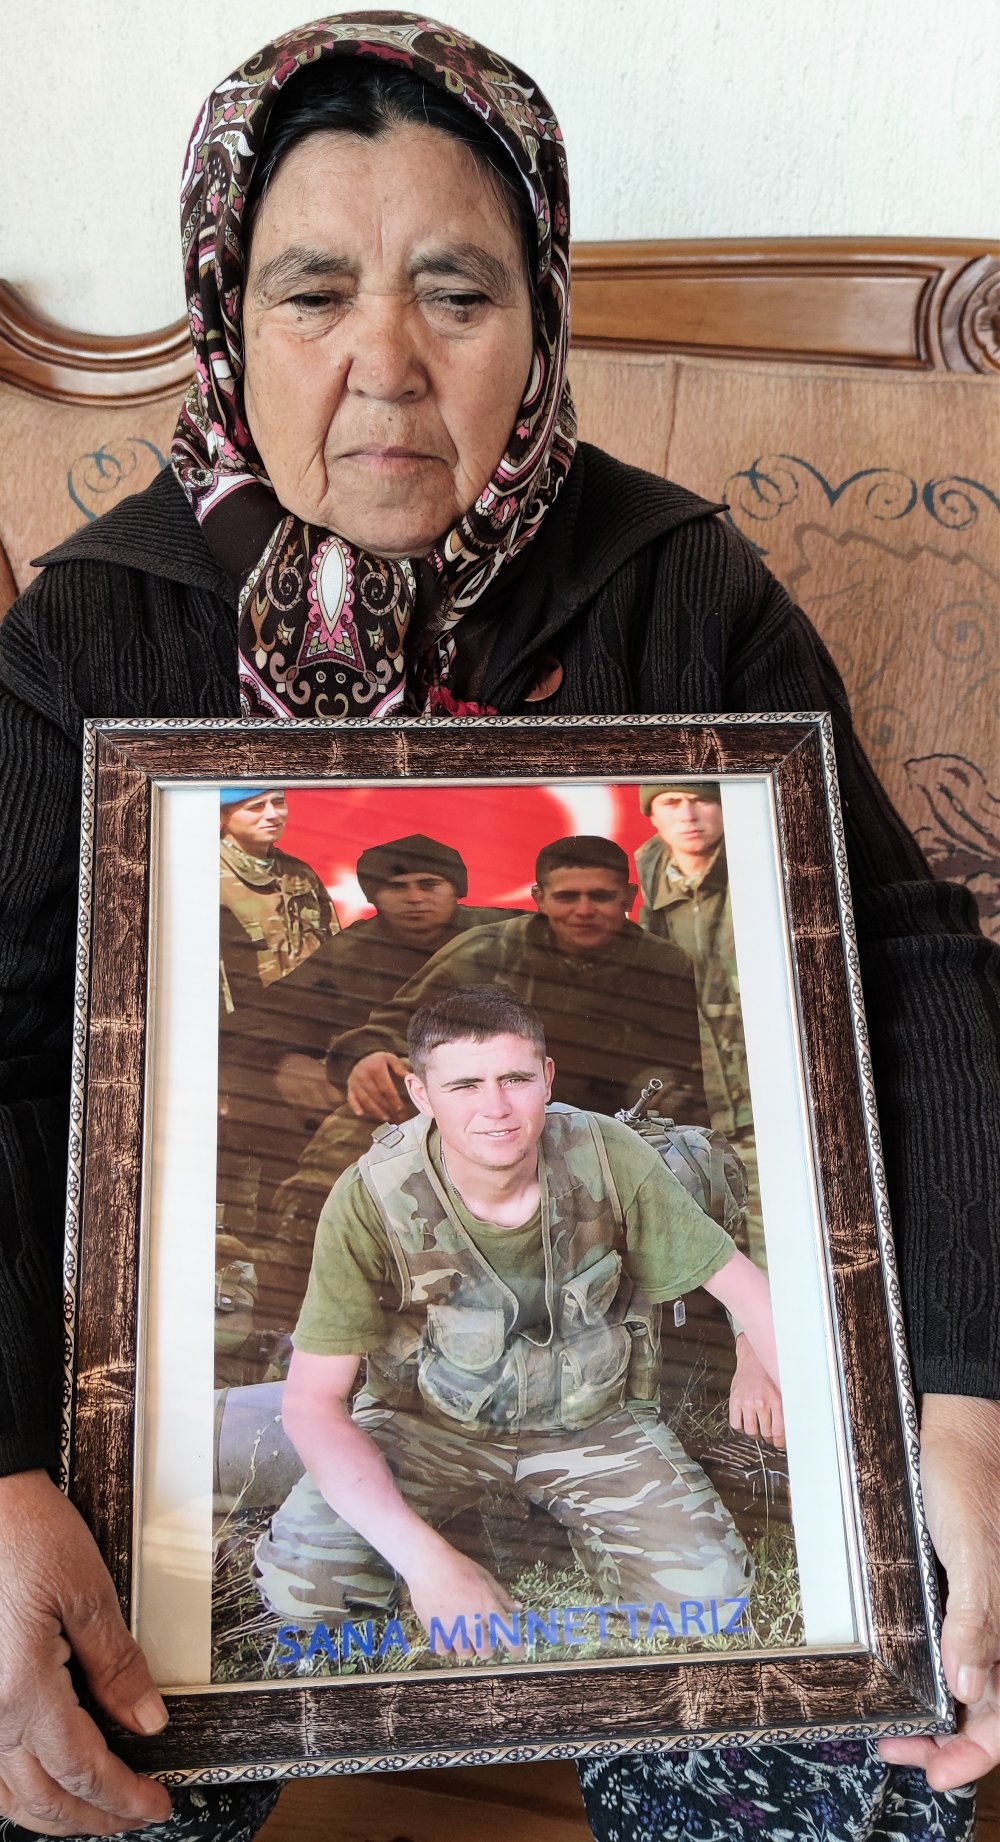 Terhisine 20 gün kala üst bölgesine dönerken PKK terör örgütü üyelerinin askeri konvoya açtığı ateş sonucu şehit olan Denizlili Jandarma Er Ömer Yankayış’ın acılı annesi, 16 yıl sona gelen müjdeli haberi oğlu ve kocasının kabirlerine götürdü. Şehit anasının “Ömer’im katilini öldürmüşler sen rahat uyu. Ali’m oğlumun katili vurulmuş, sana müjde vermeye geldim. Rahat uyuyun beraber” dedi.